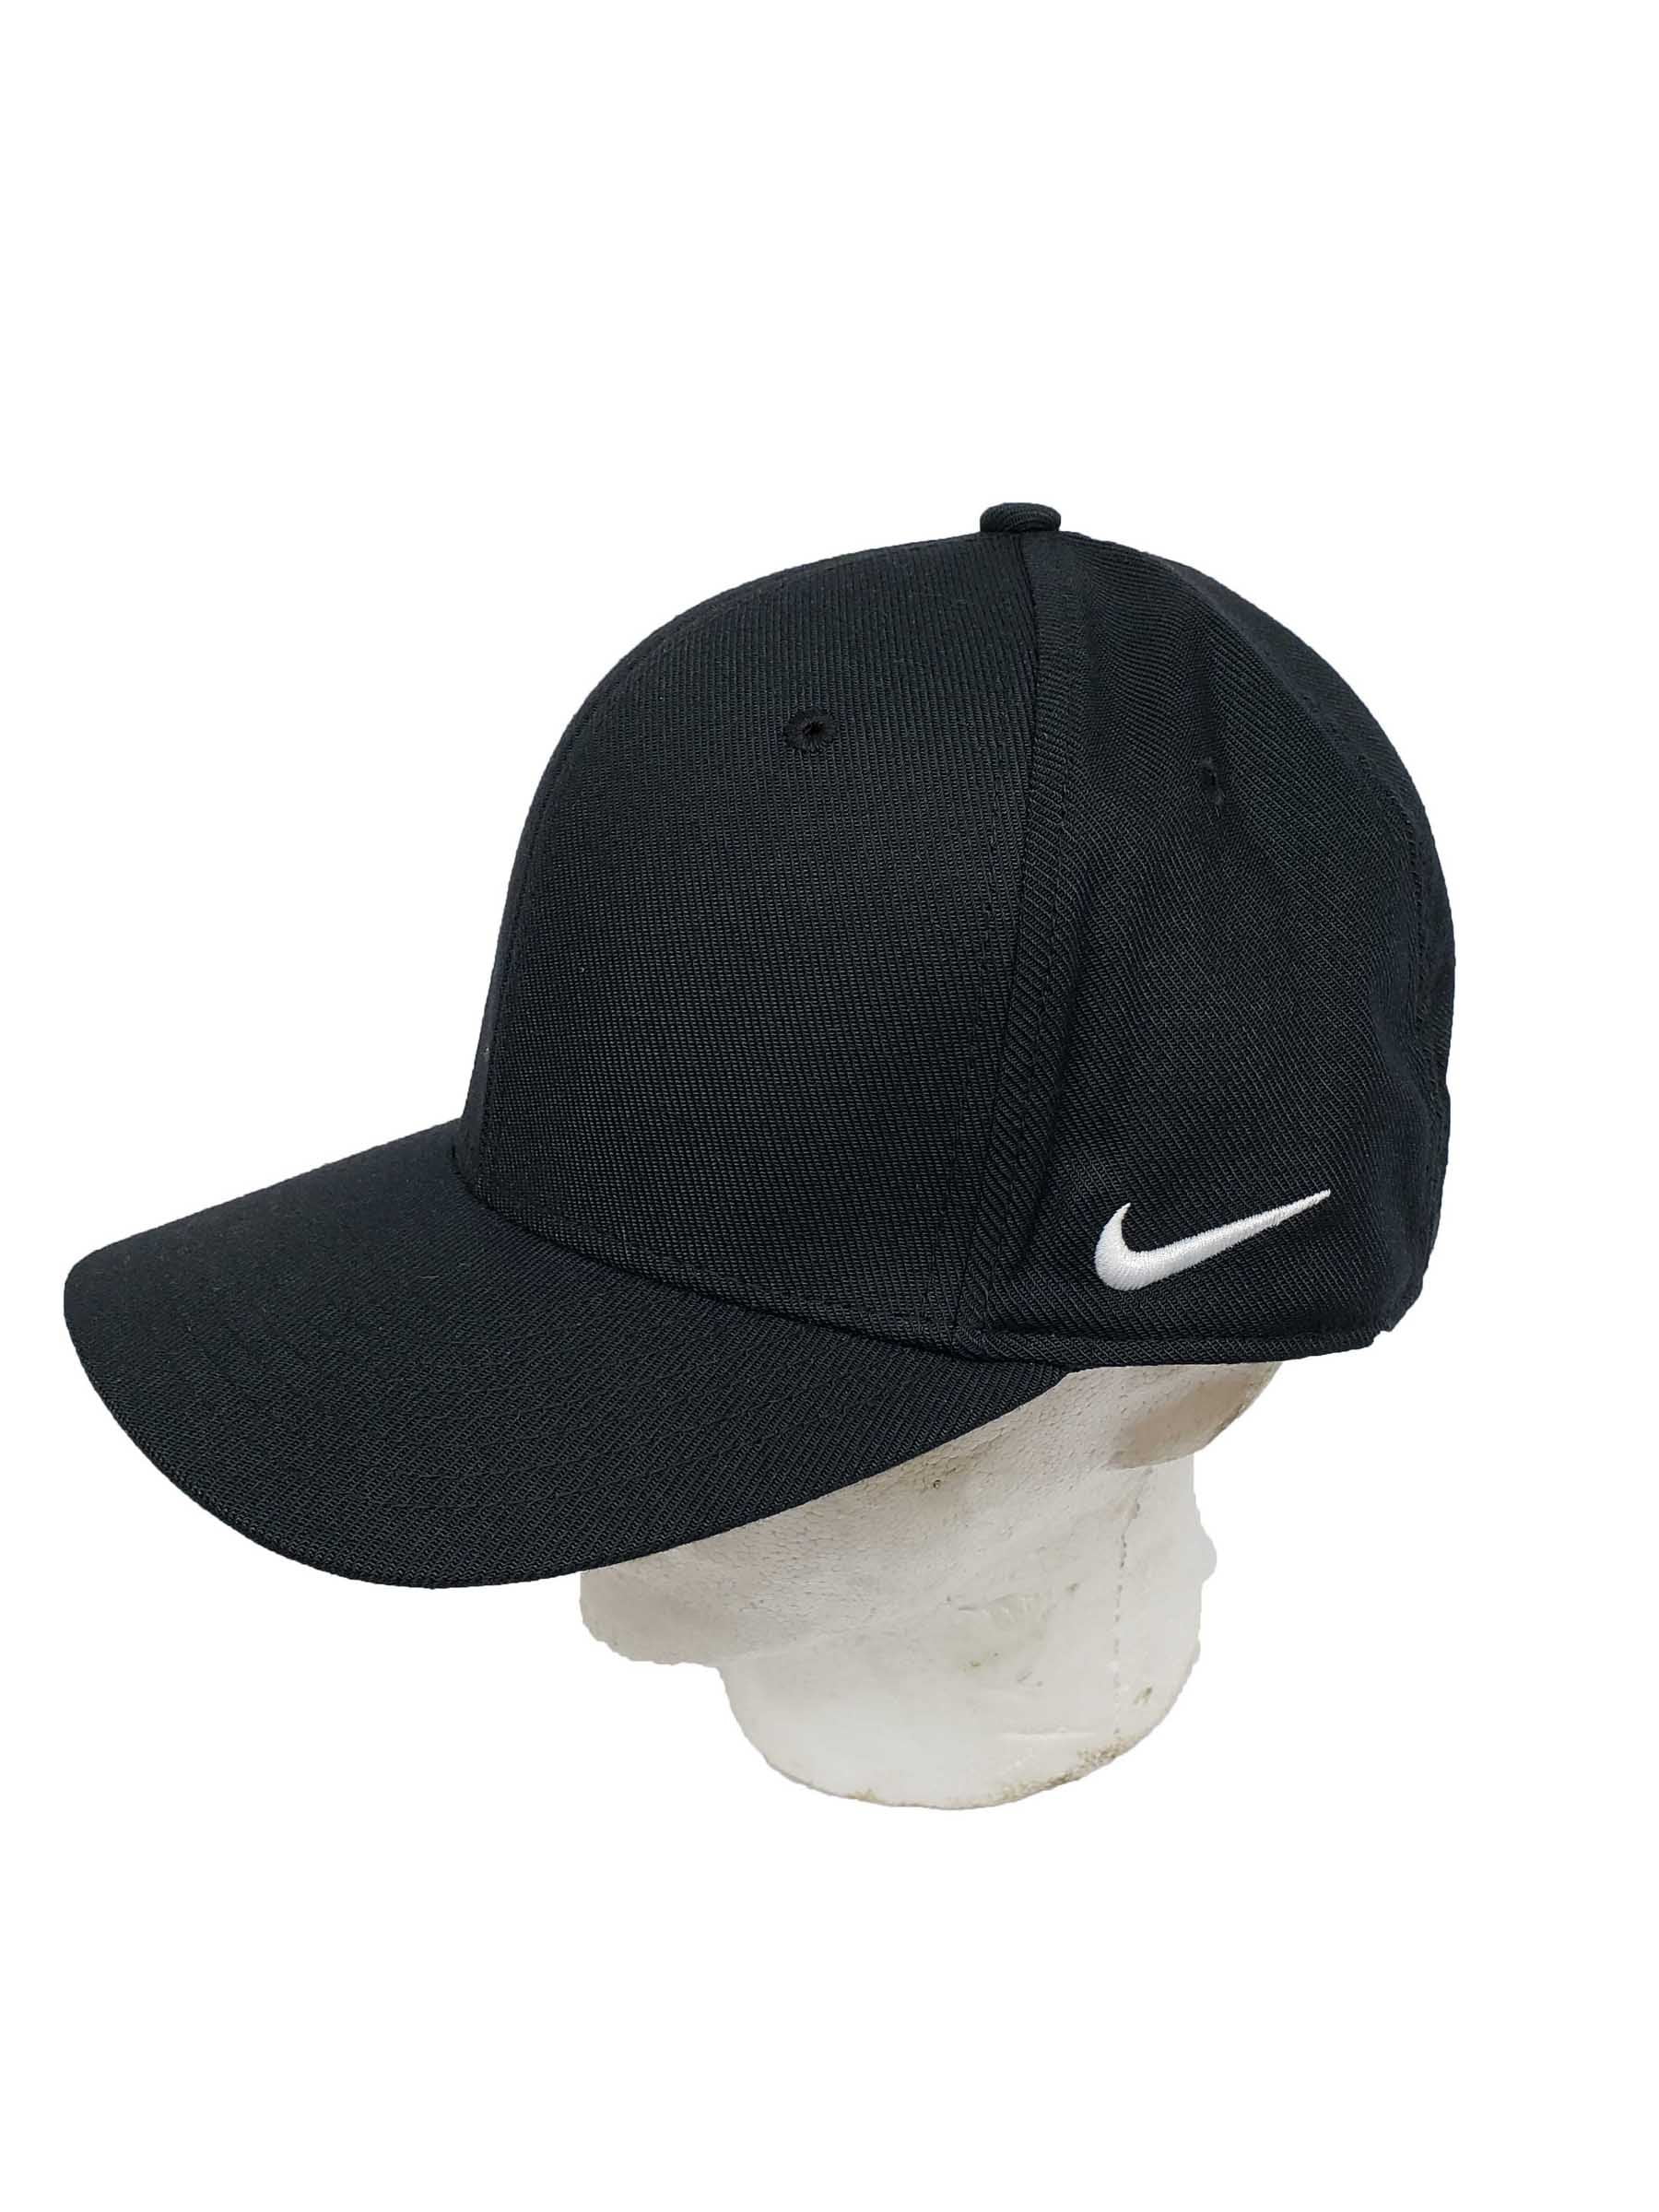 Ministerie moreel Gezamenlijke selectie Nike Team Dri-Fit Swoosh Flex Cap 867308-010 (L/XL) - Walmart.com